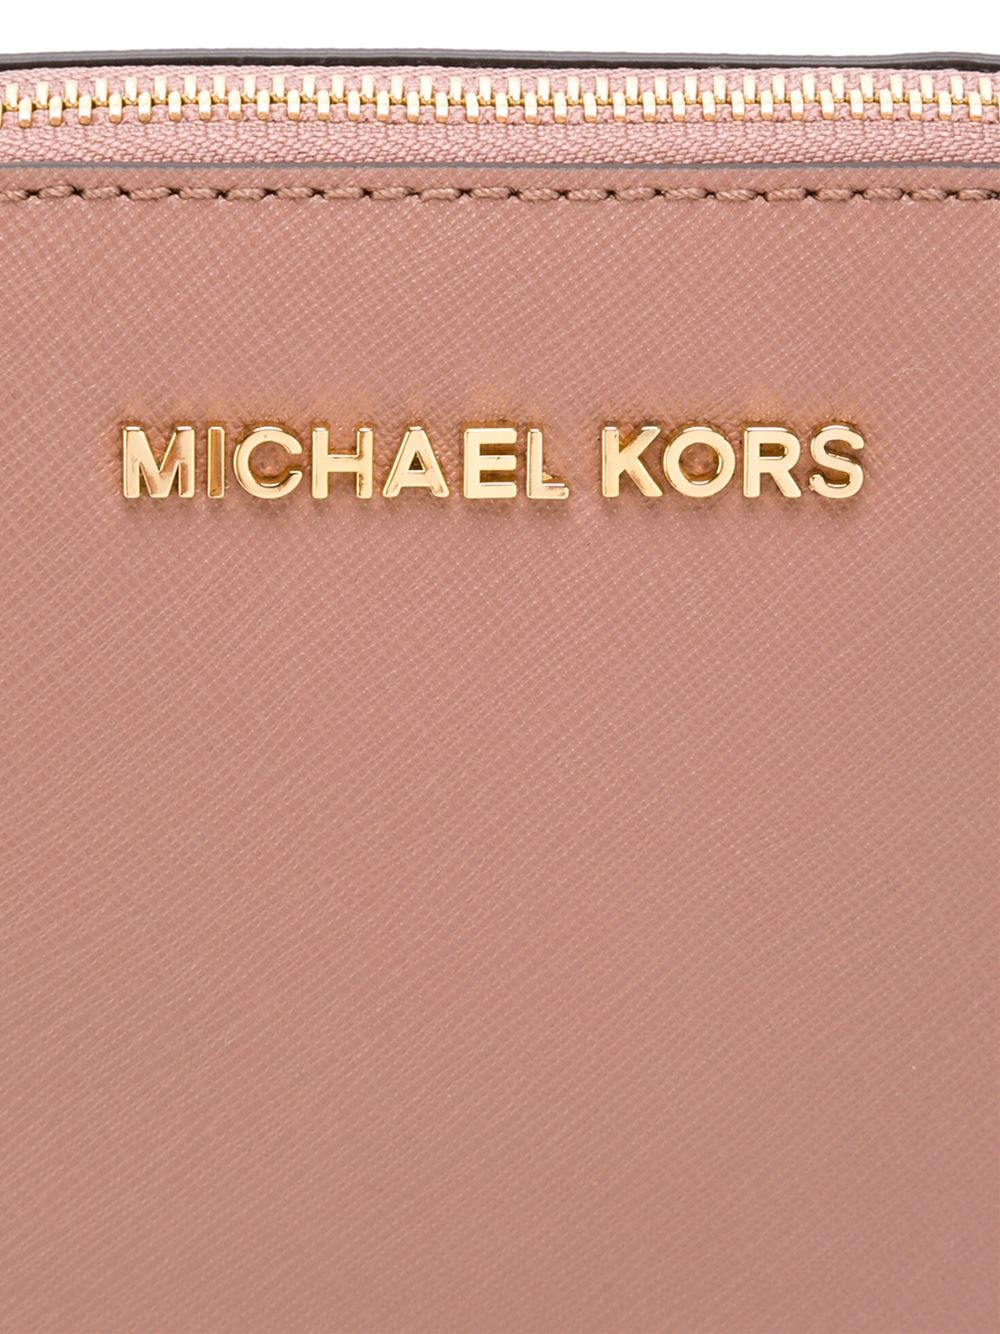 michael kors pink makeup bag